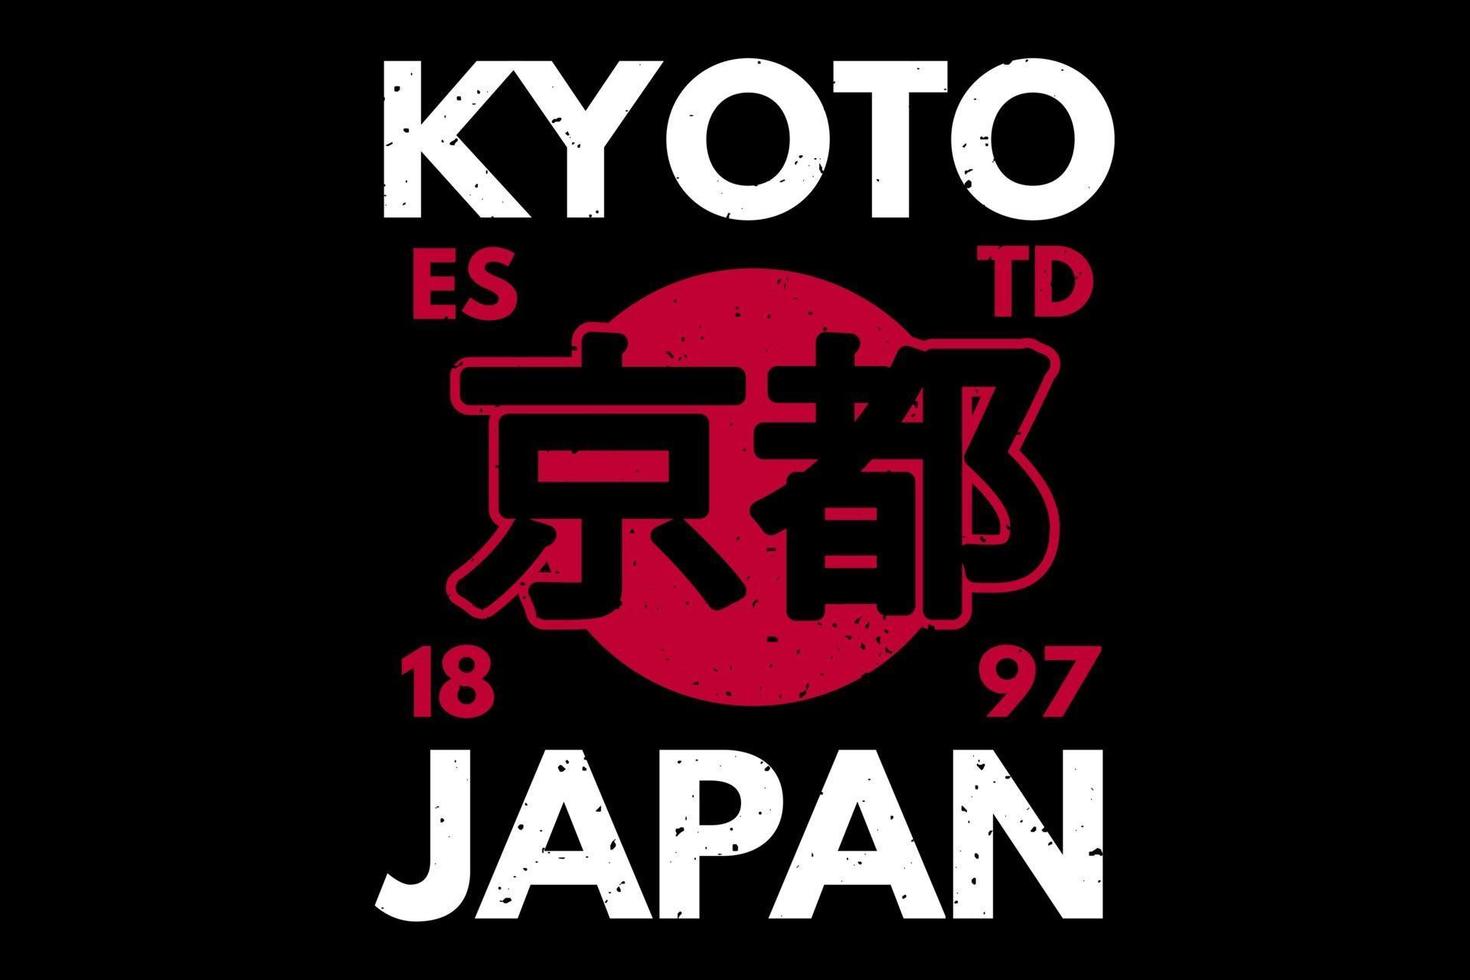 t-shirt design di kyoto giappone tipografia illustrazione vintage retrò vettore